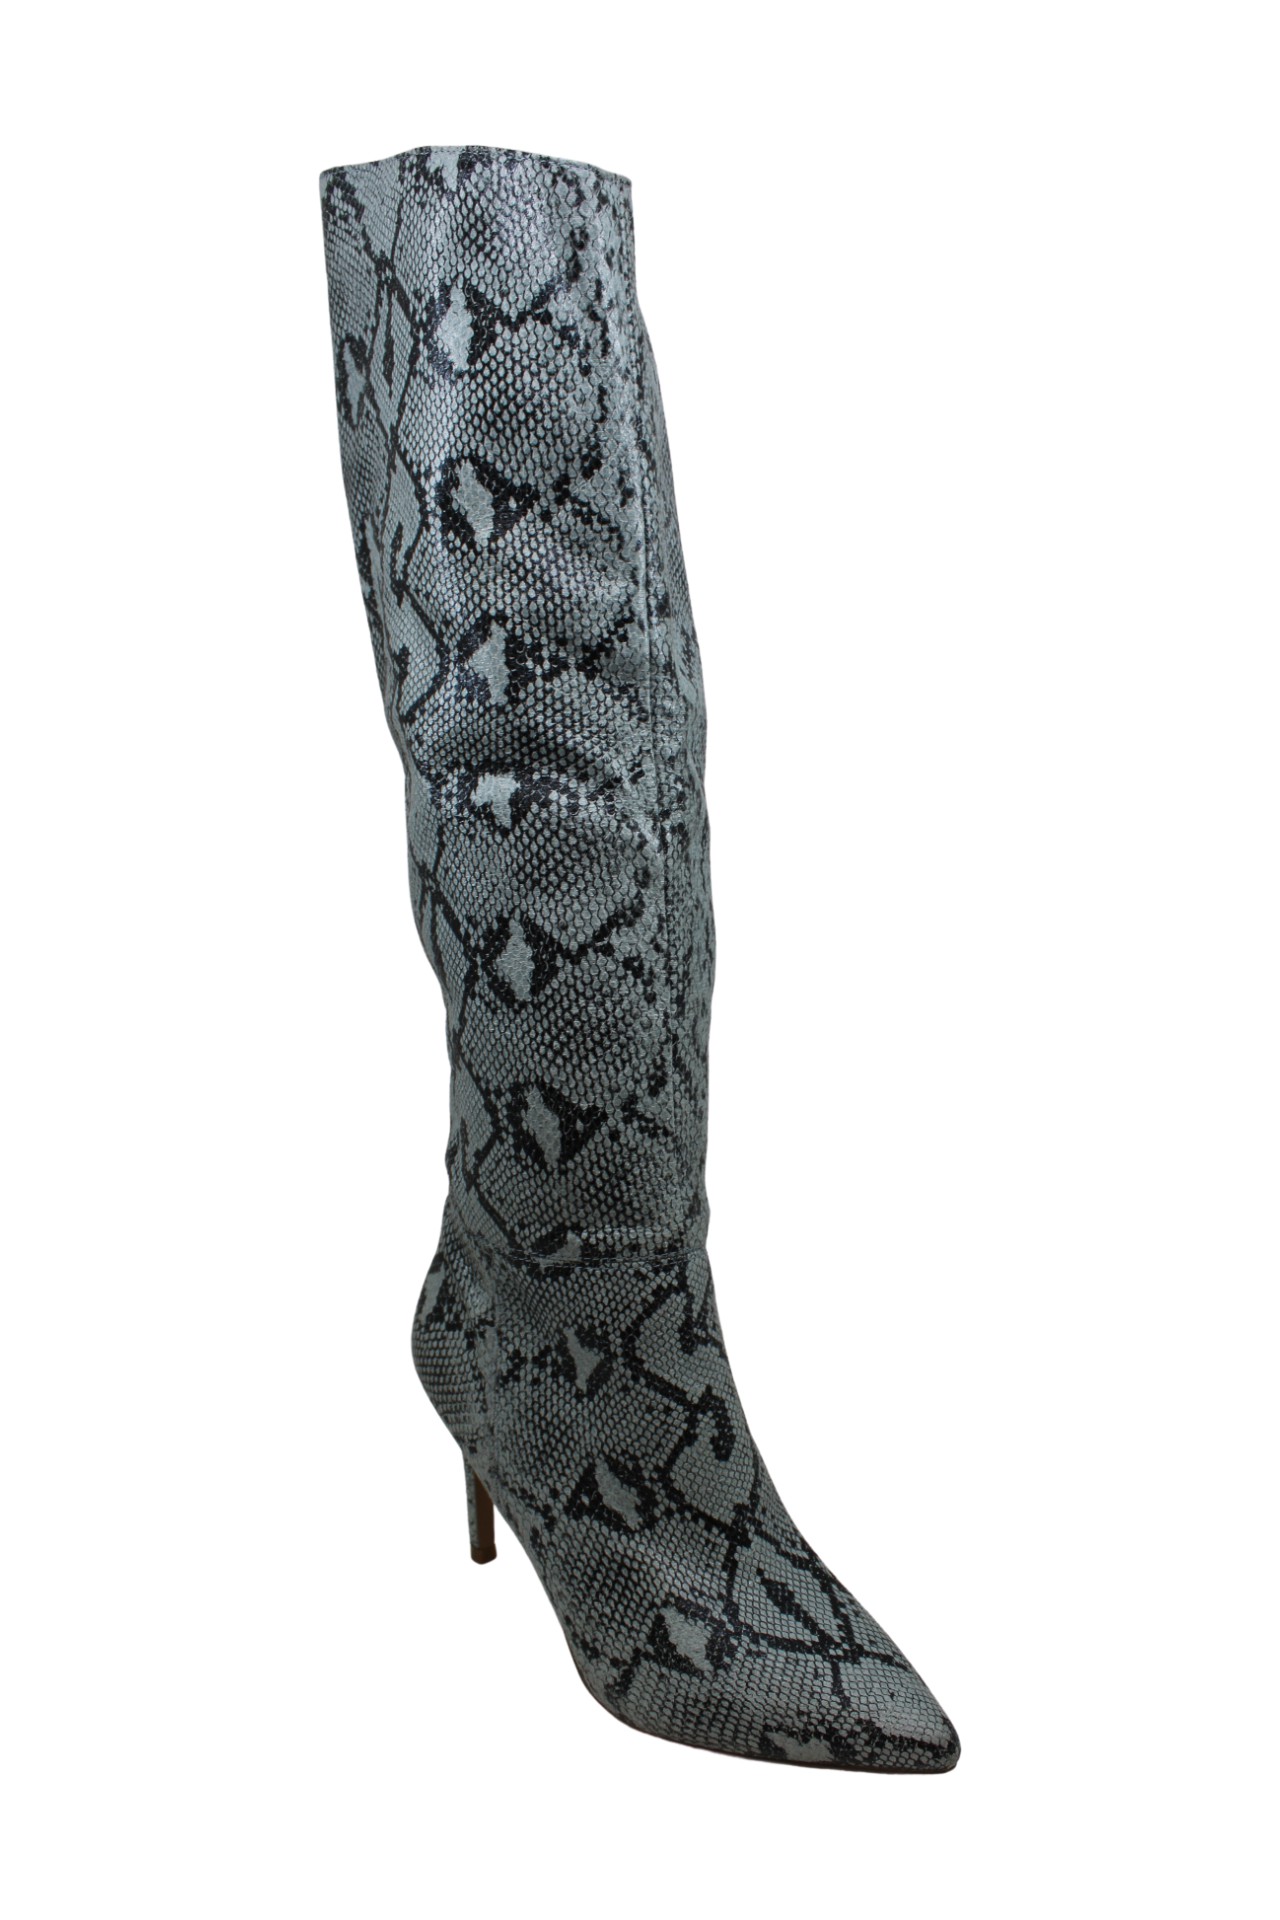 Steve Madden Women's Shoes Kimari slouch boot Pointed Toe, Blu Snake